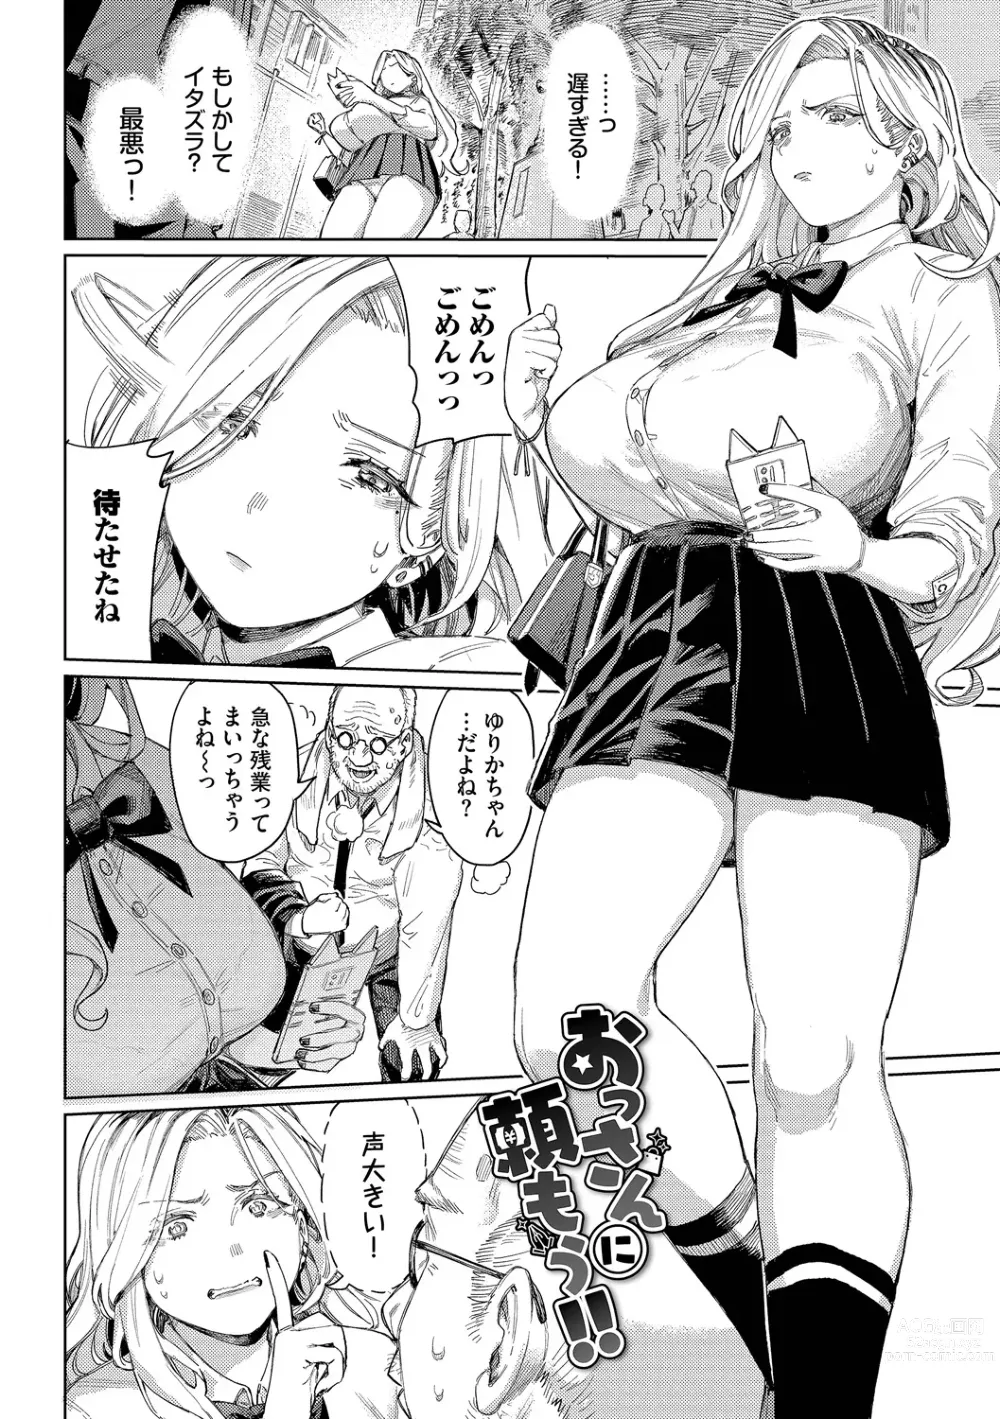 Page 3 of manga Mesuochi Showtime